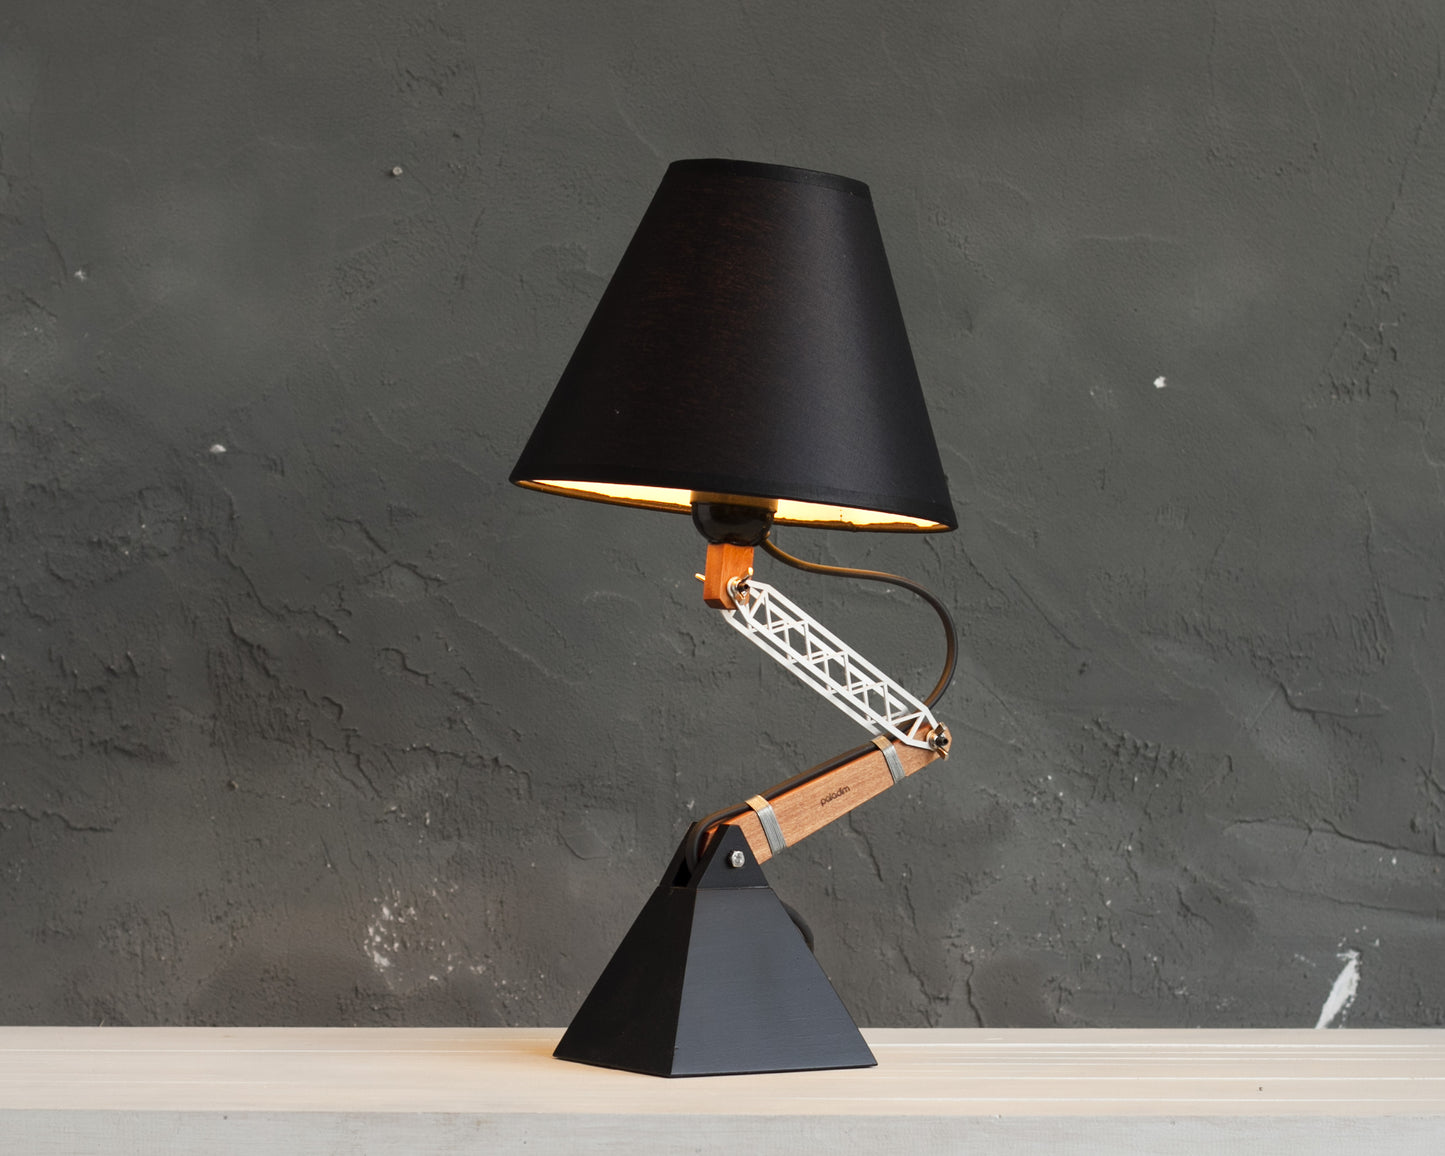 KRICK adjustable table lamp